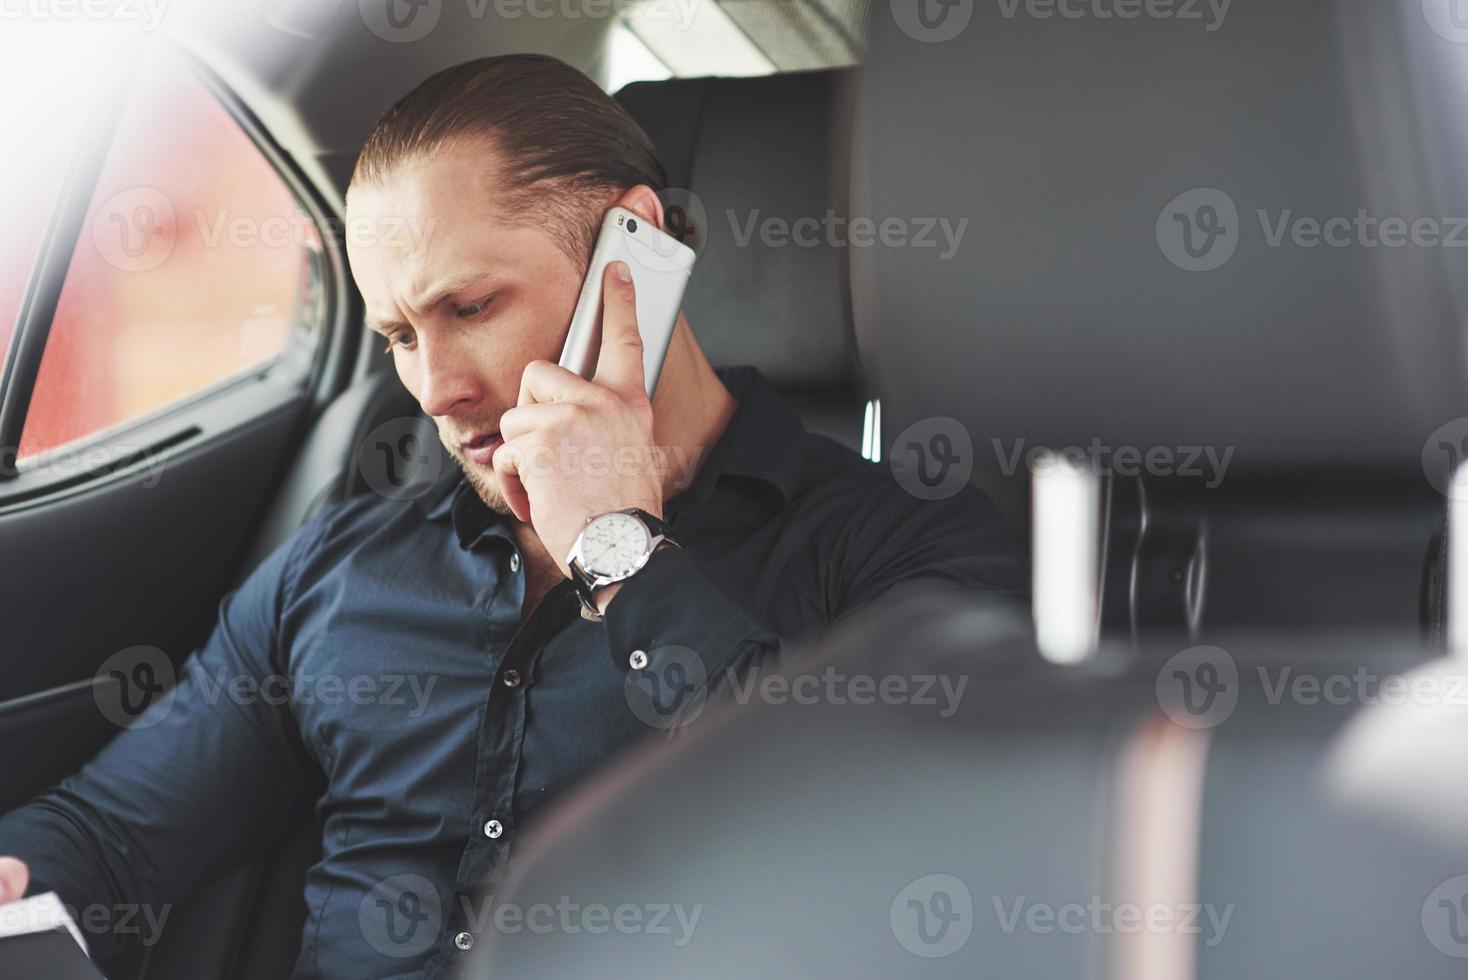 un uomo d'affari che invia un messaggio a uno smartphone e si avvicina al sedile posteriore dell'auto. foto